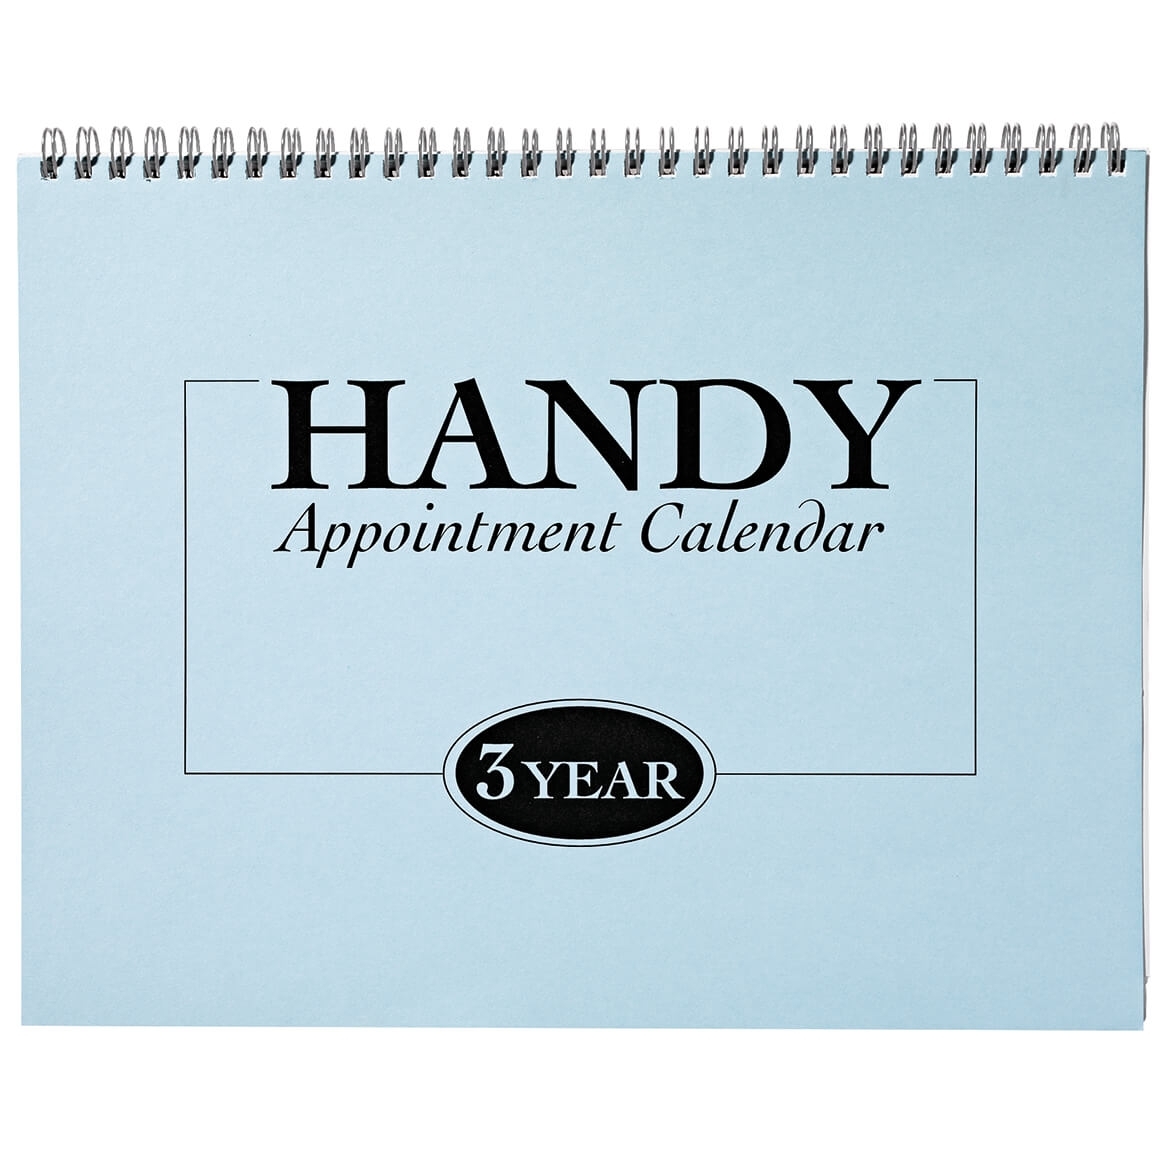 3-Yr Appointment Calendar 2021-2023